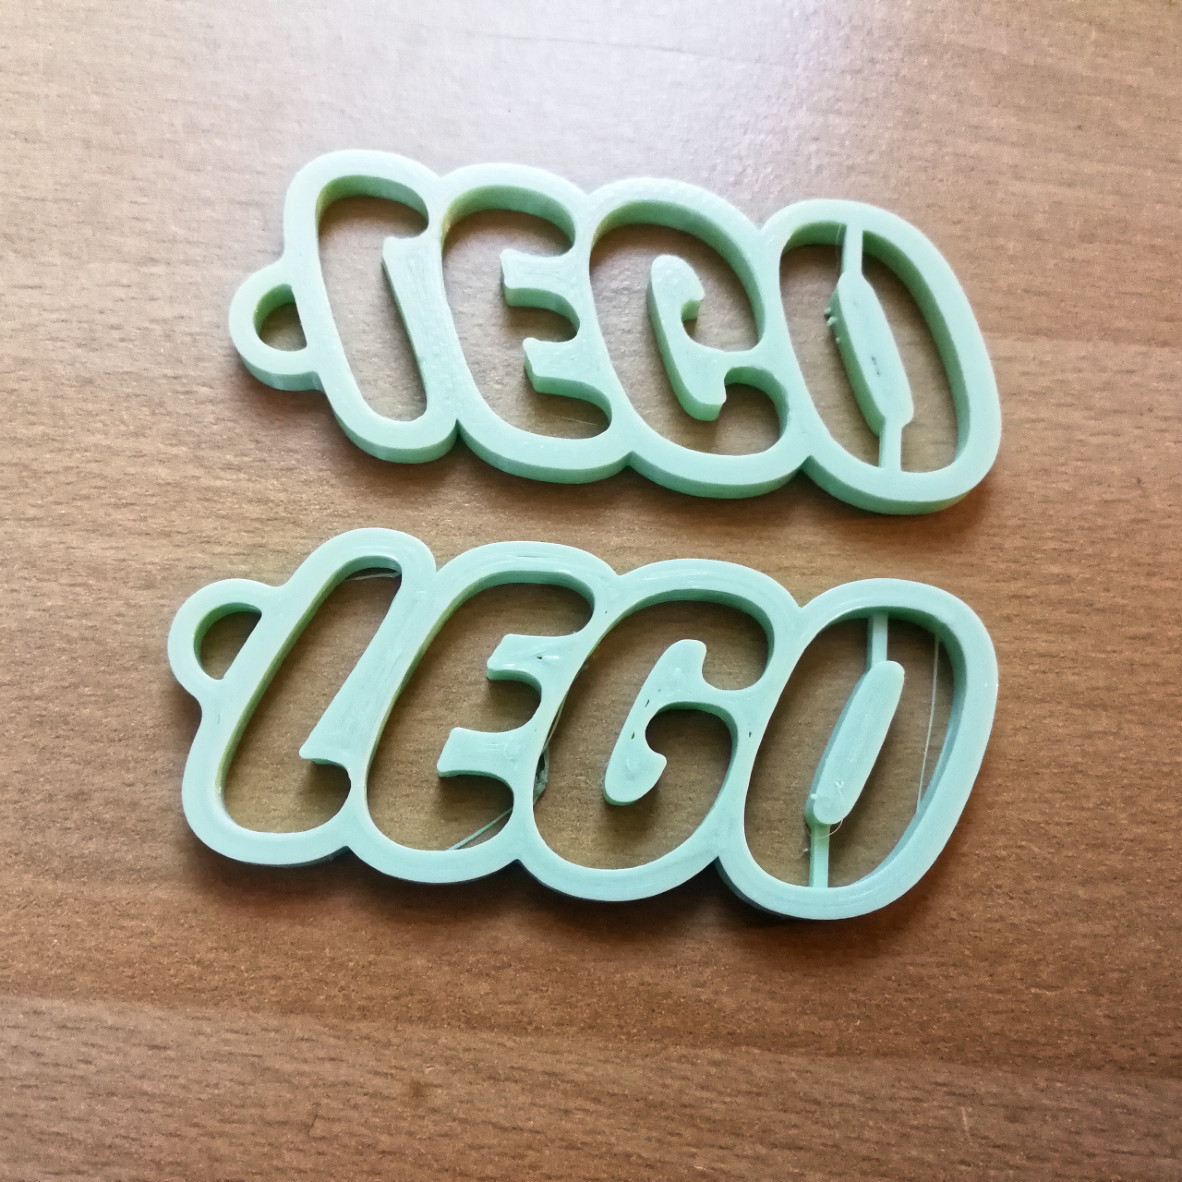 Key chain with LEGO logo